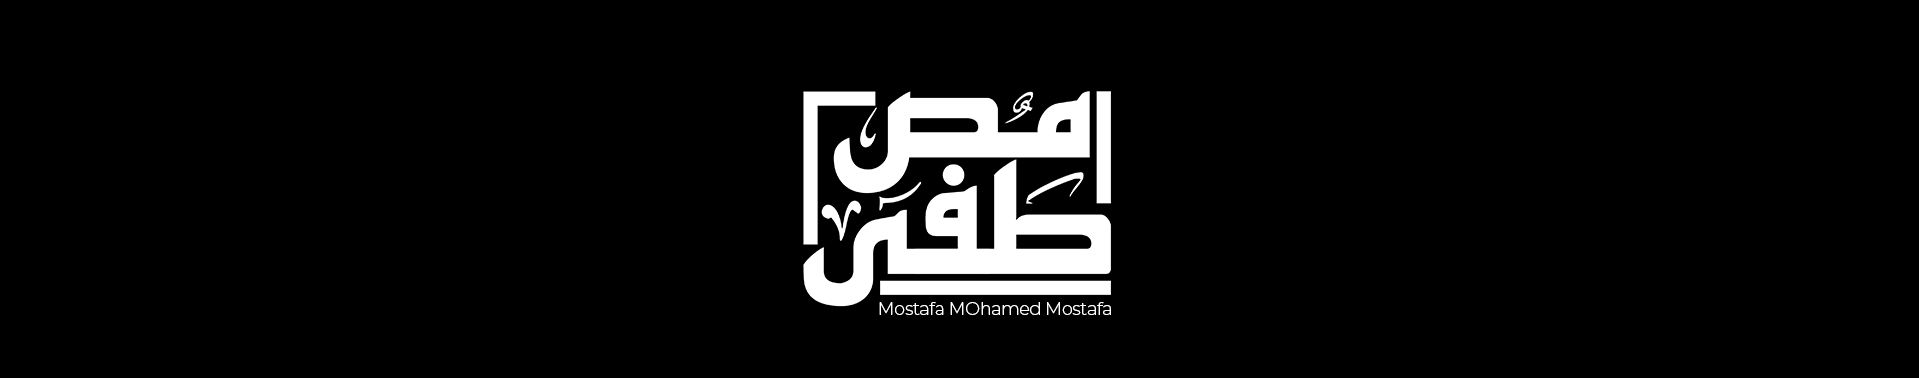 Mostafa Mohamed's profile banner